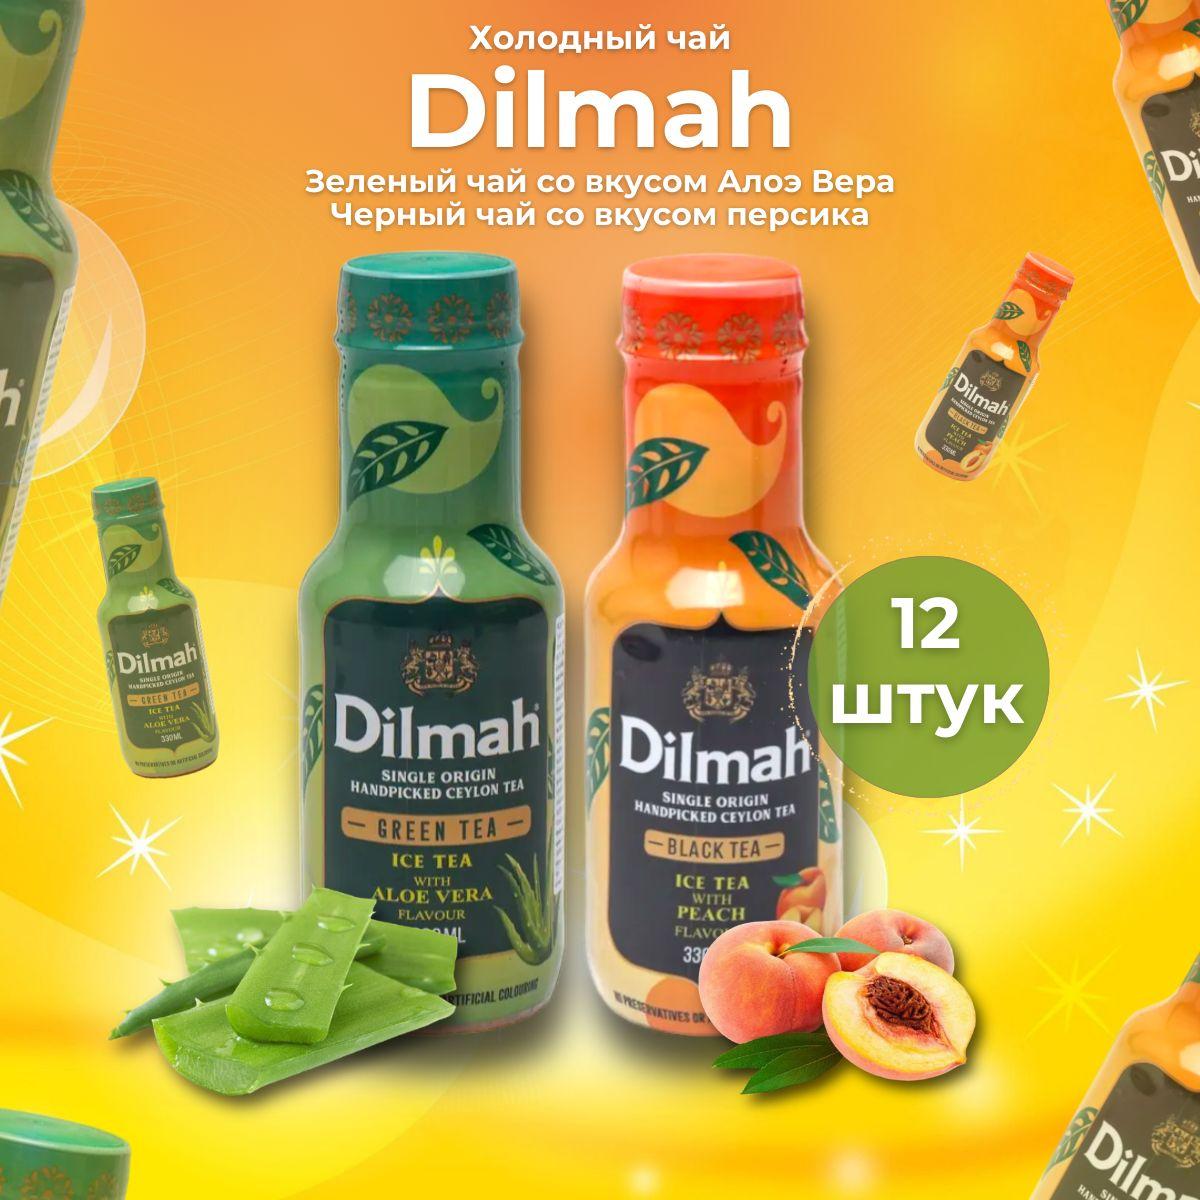 Холодный чай Dilmah набор 6+6 штук. 12 бутылок. С персиком и Алоэ Вера 330 мл